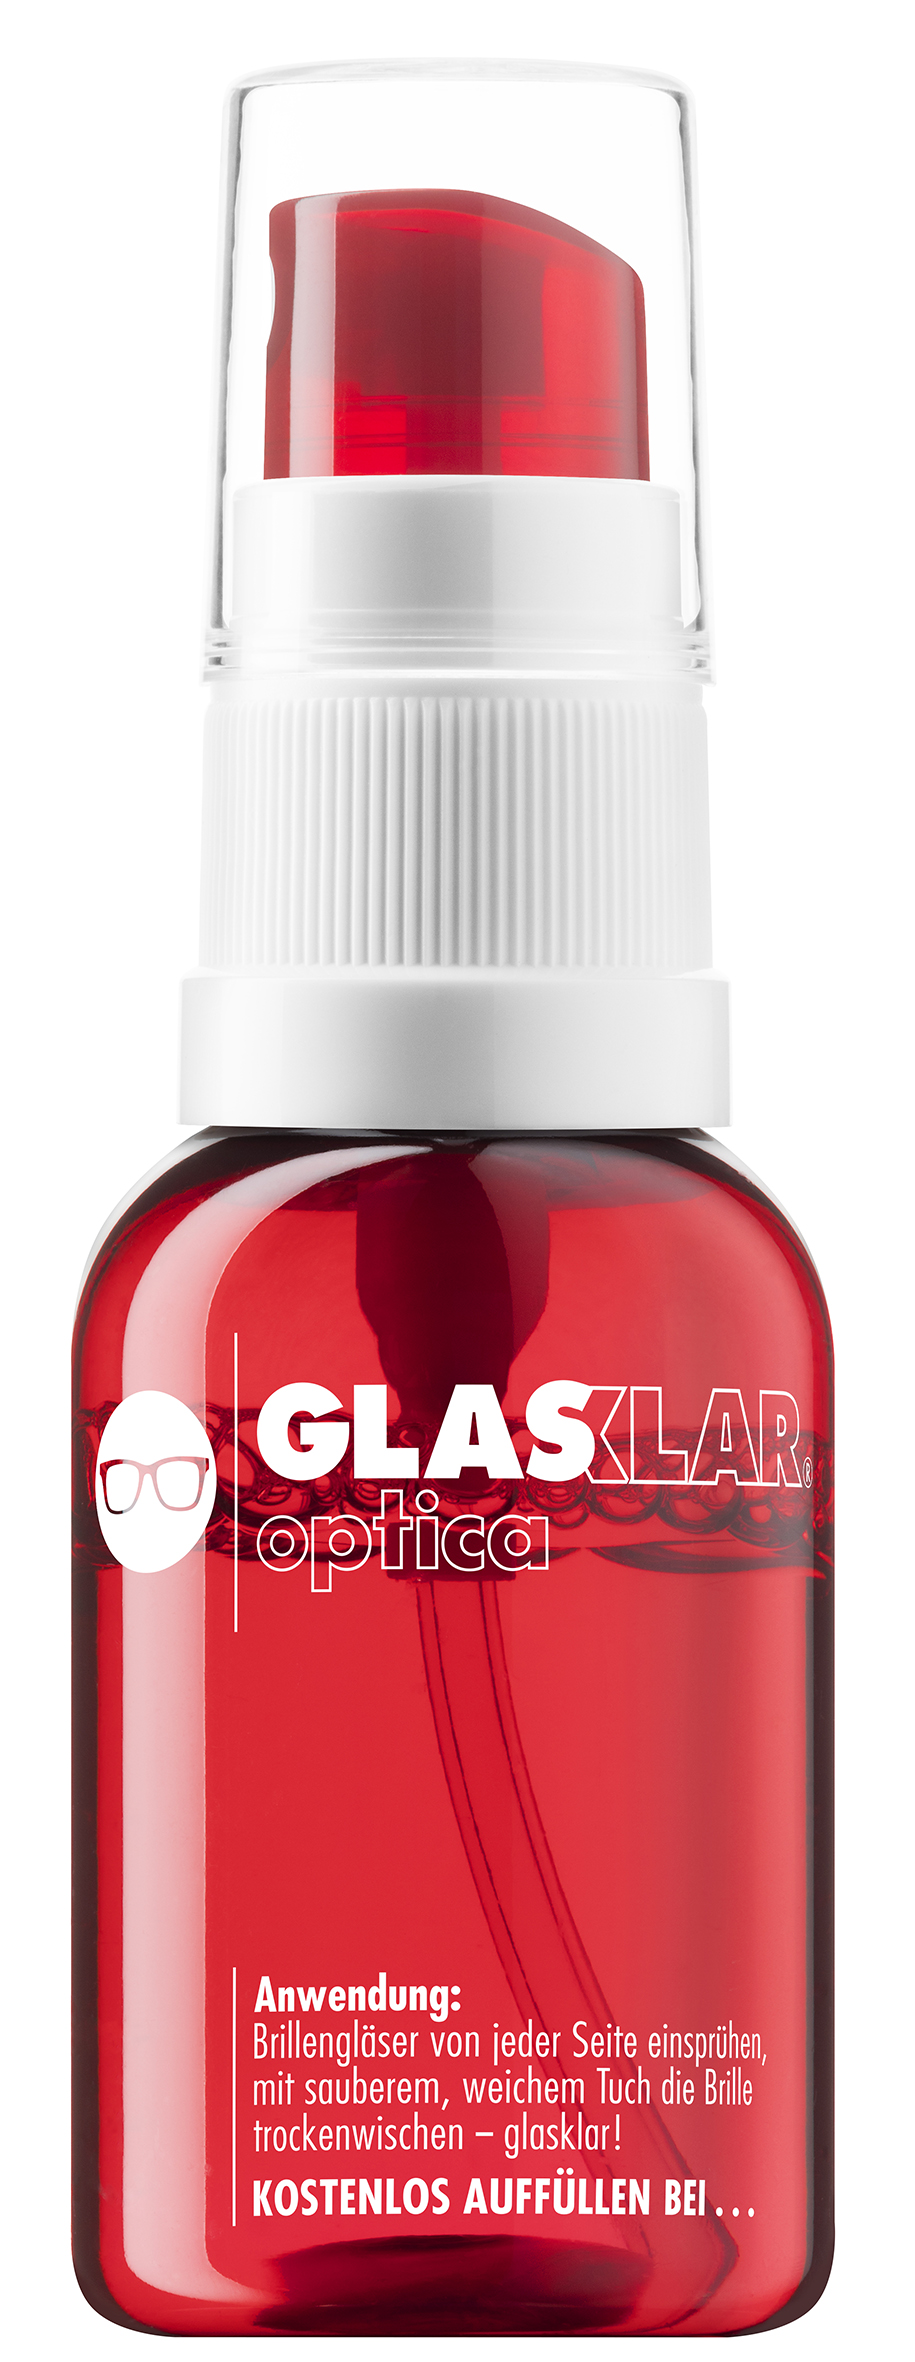 GLASKLAR optica_bottle red.jpg